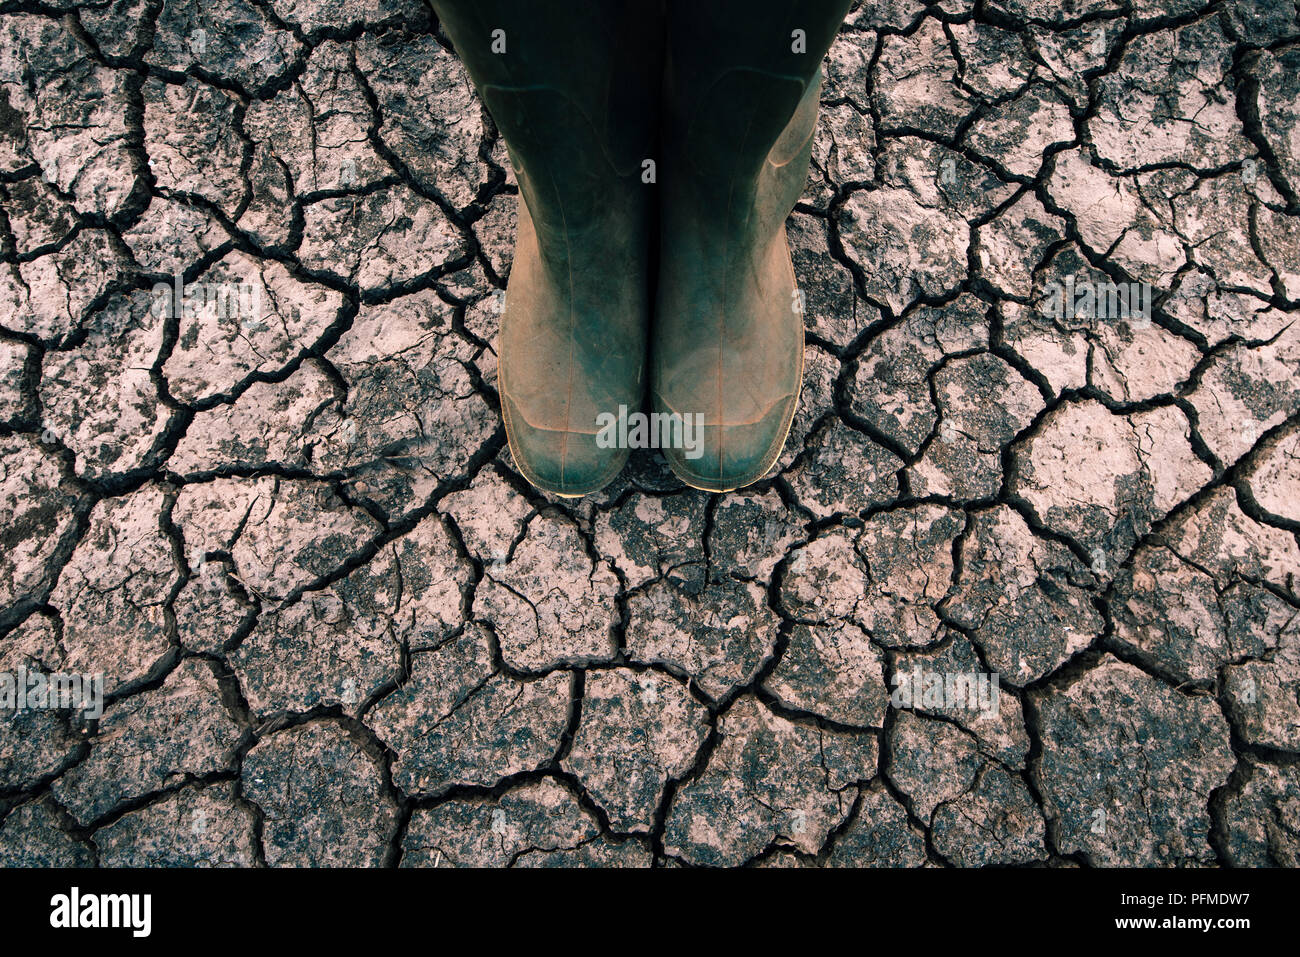 Agriculteur en bottes de caoutchouc debout sur sol sec sol, le réchauffement planétaire et le changement climatique a des répercussions sur la croissance et le rendement des cultures Banque D'Images